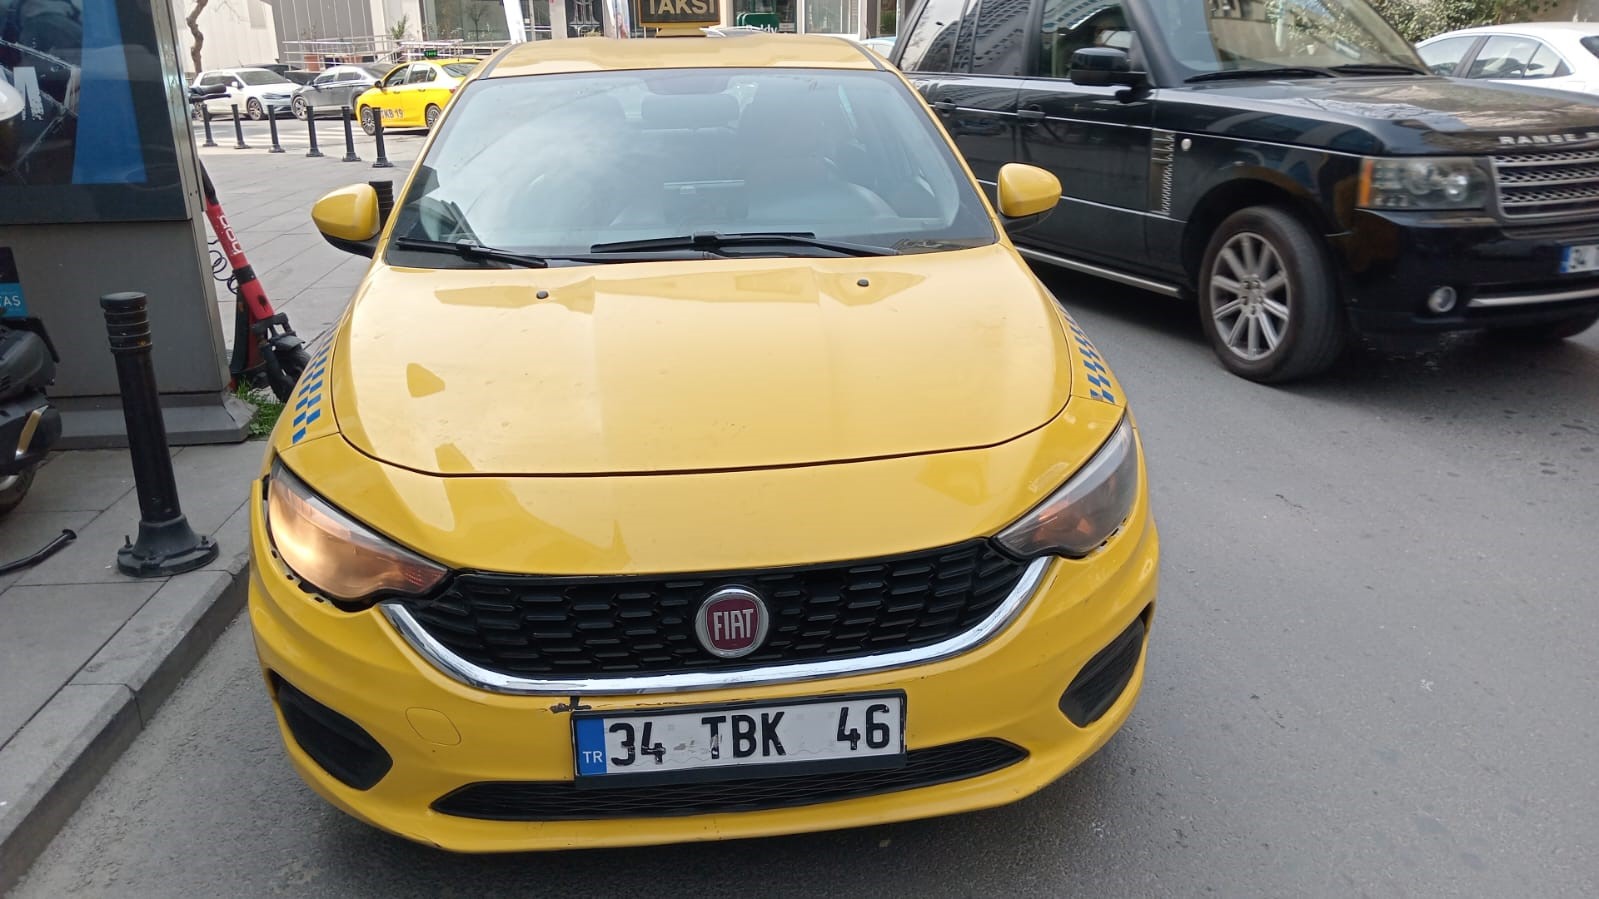 İstanbul’da iki genci otobanda araçtan indirmek isteyen taksi sürücüsü yakalandı
